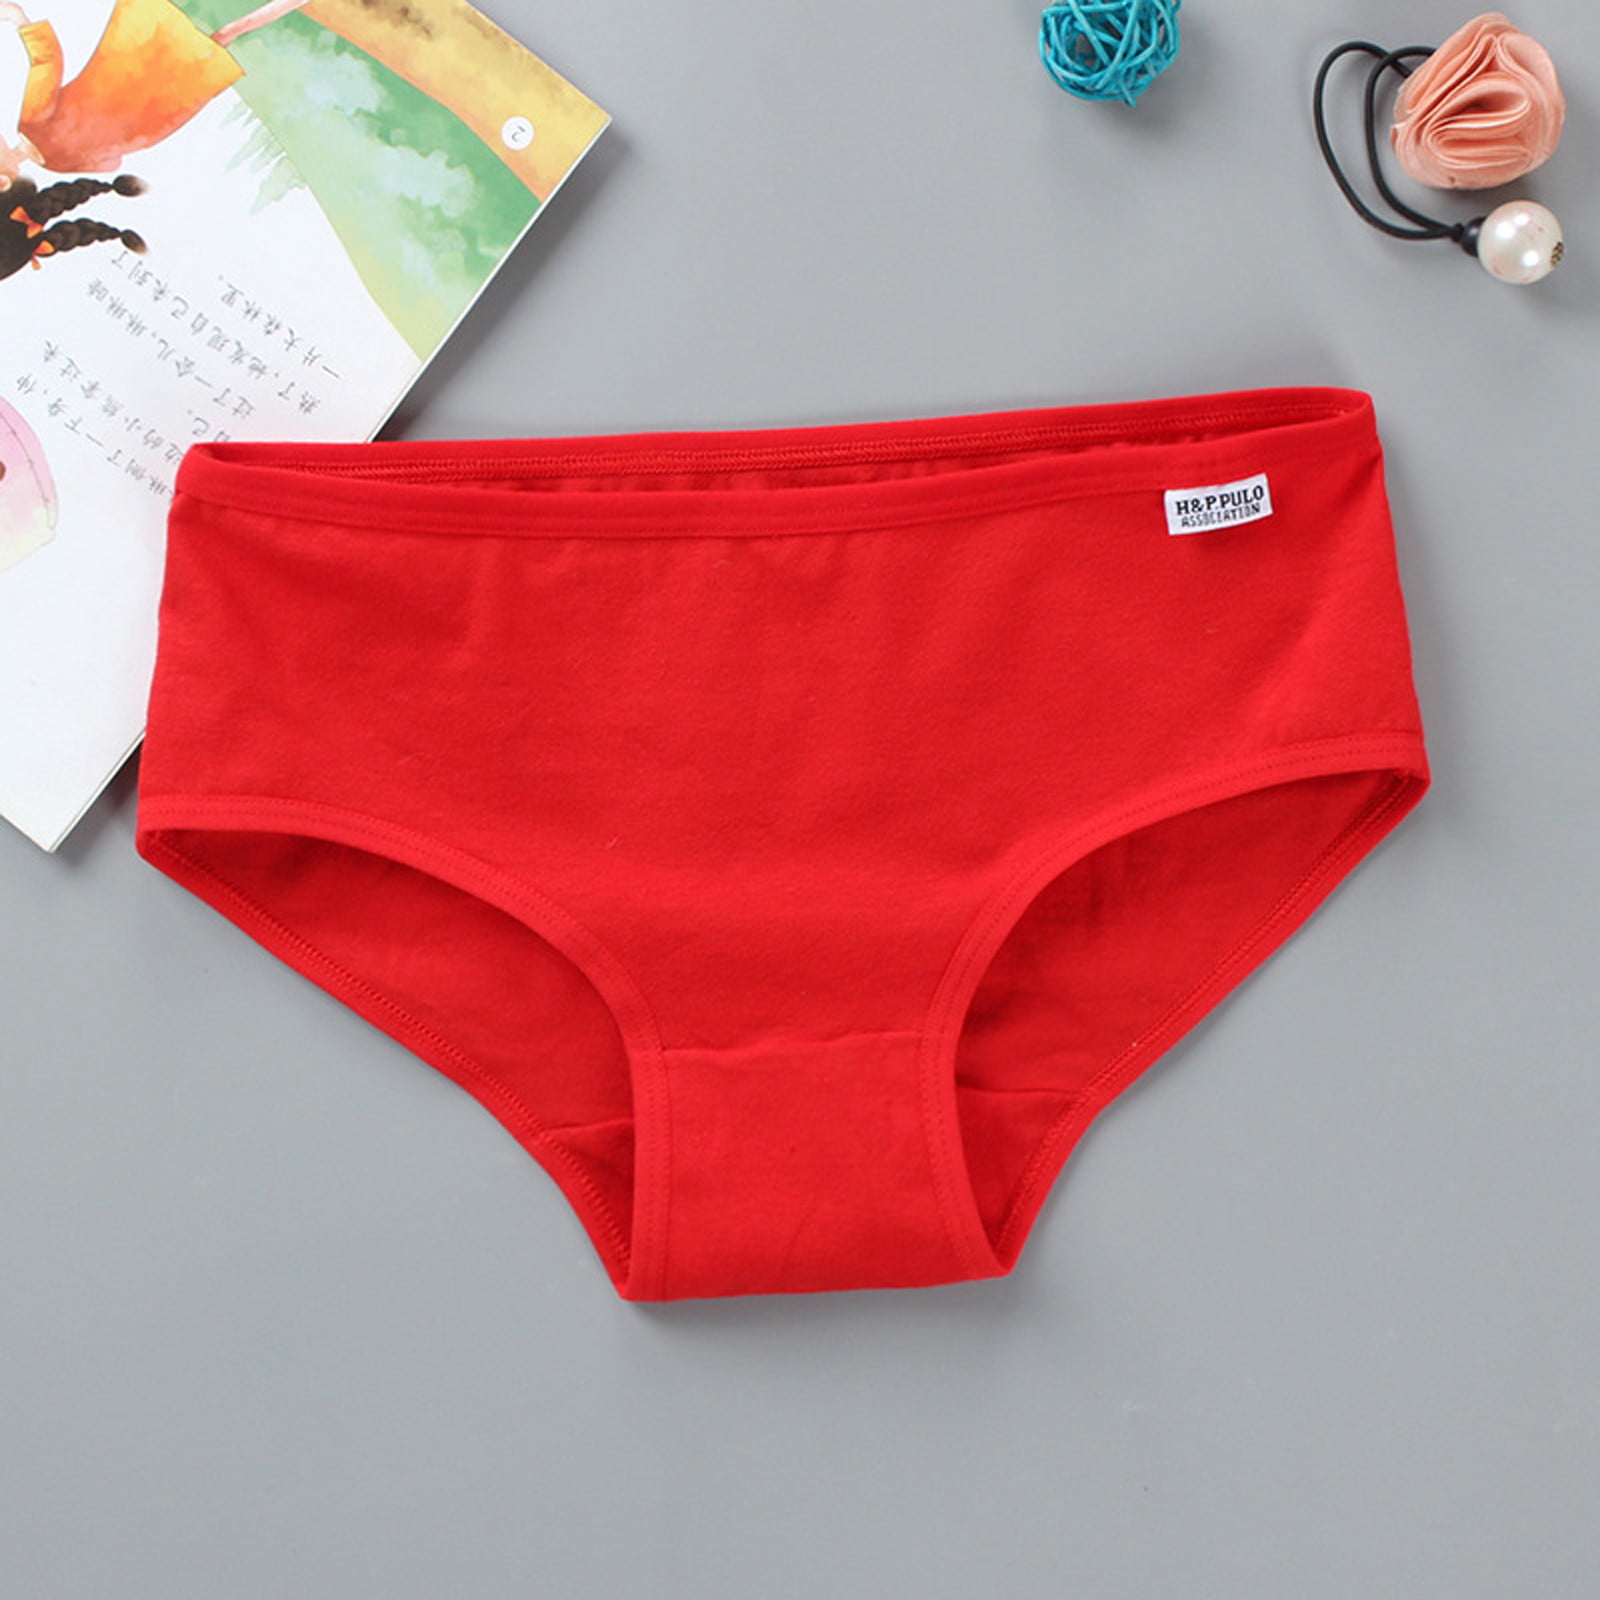 Vikakiooze 2022 Girls' underwear Pure Cotton Briefs Solid Low, Rise ...